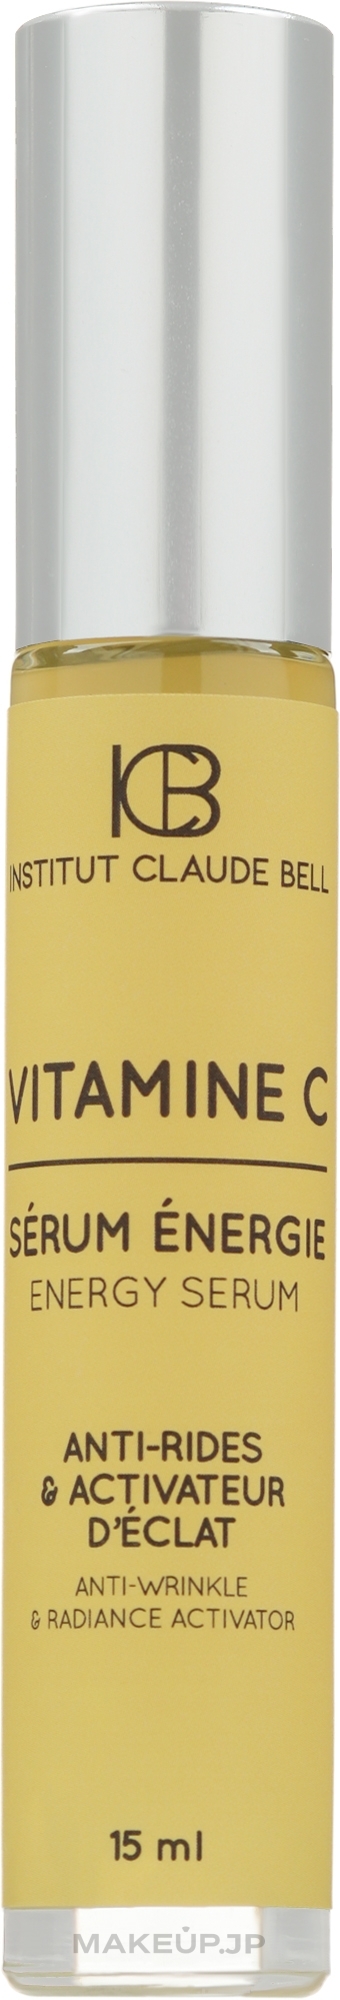 Vitamin C Face Serum - Institut Claude Bell Vitamin C Intense Energy Serum — photo 15 ml